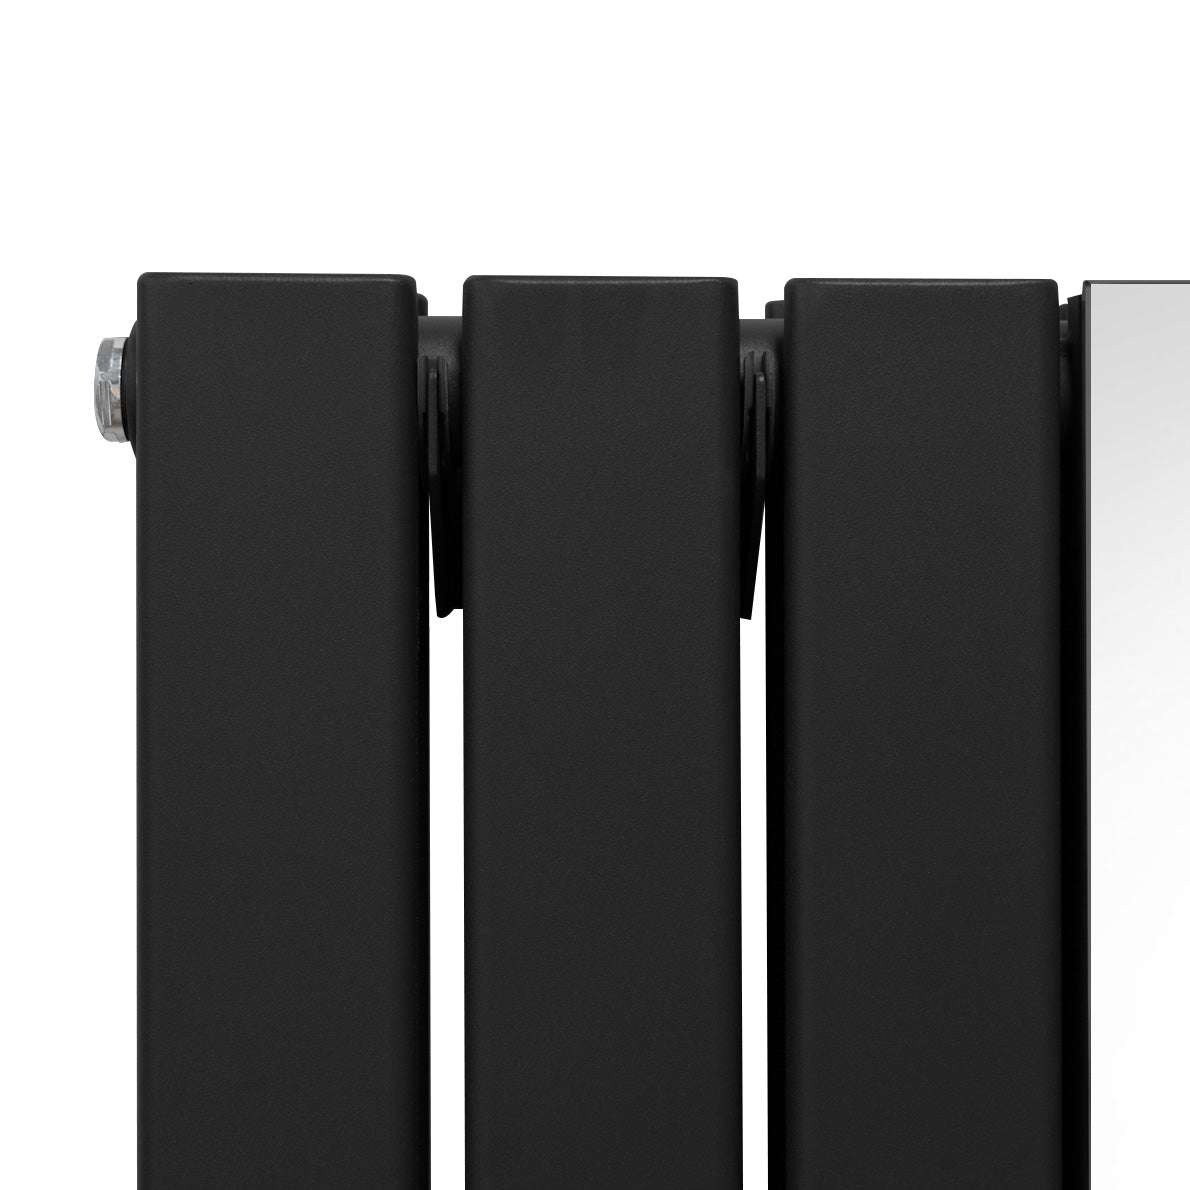 Radiador Plano con Espejo y Válvulas Cromadas TVR - 1800 mm x 425 mm - Negro